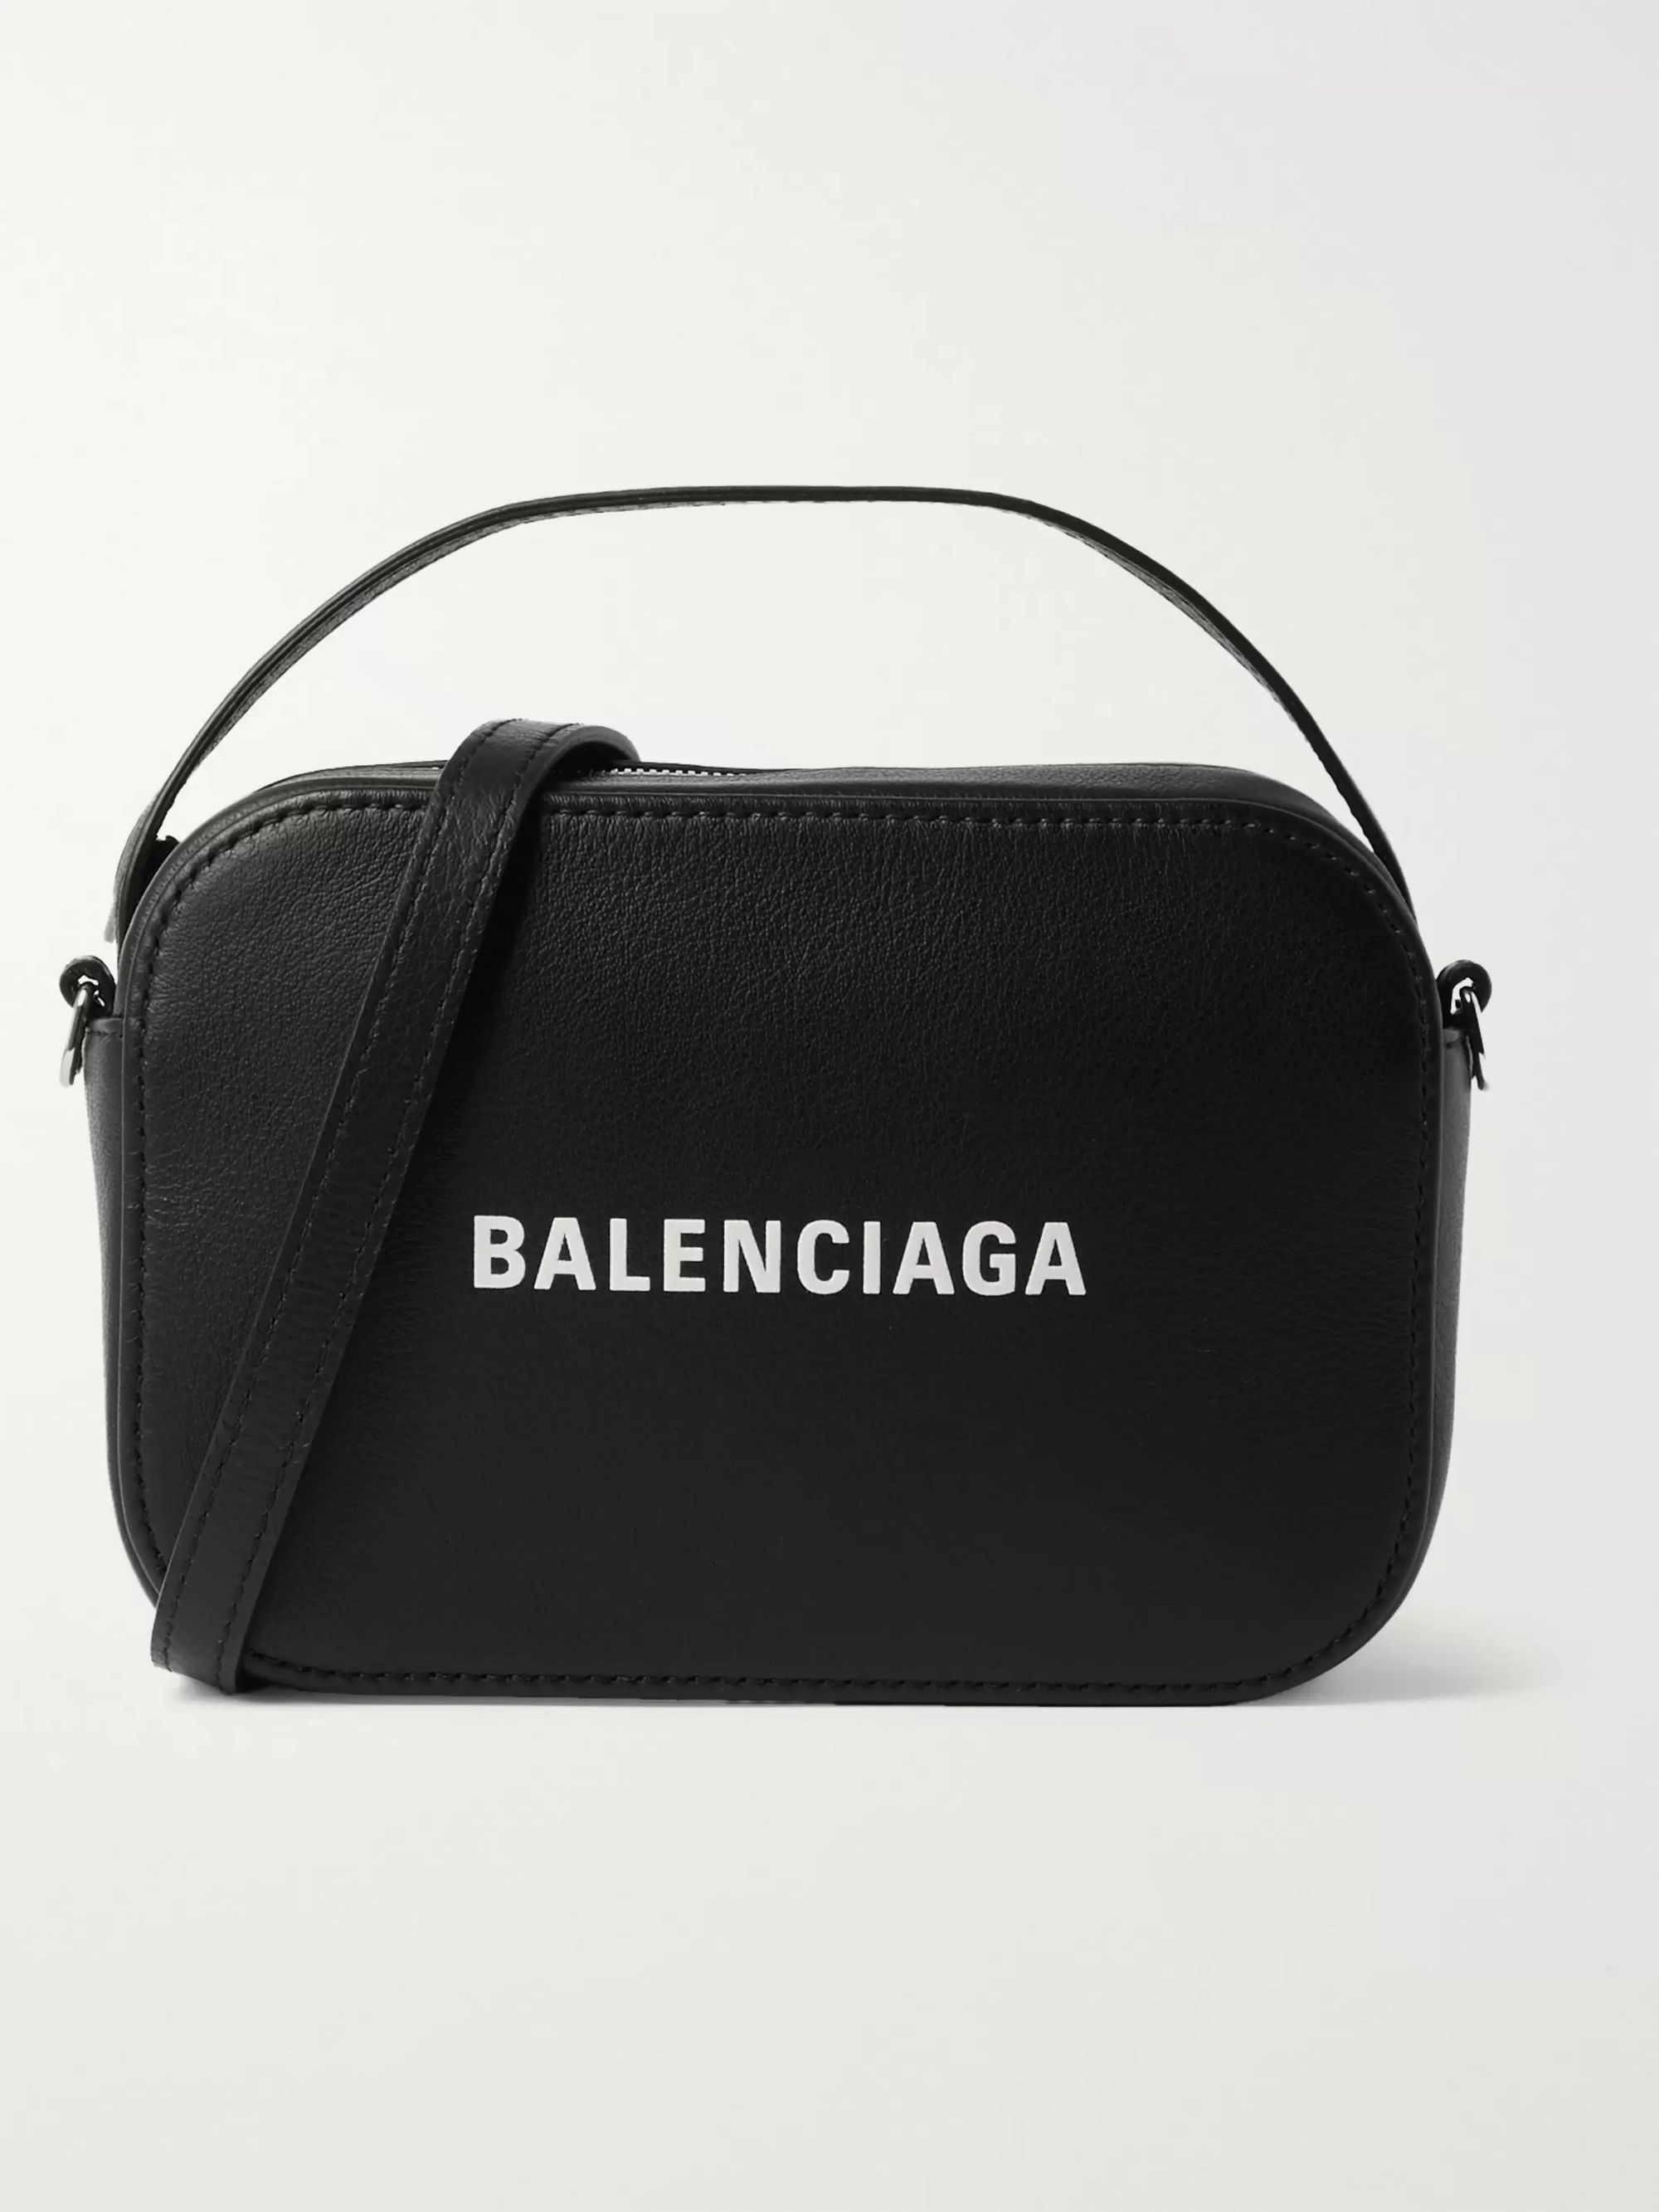 balenciaga bag with logo